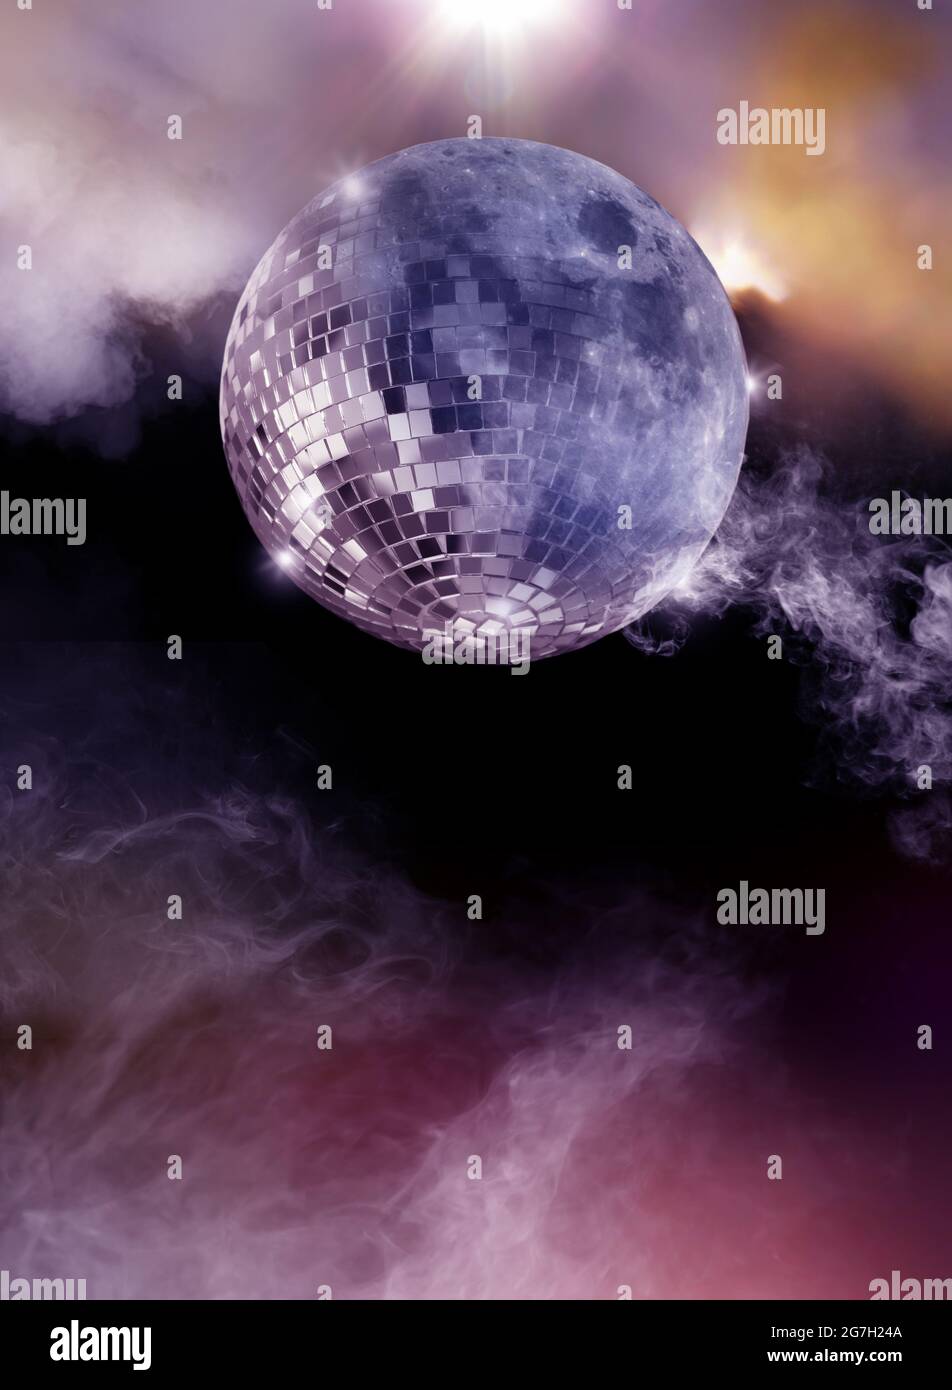 Halloween theme moon disco mirror ball with smoke, on dark background Stock Photo